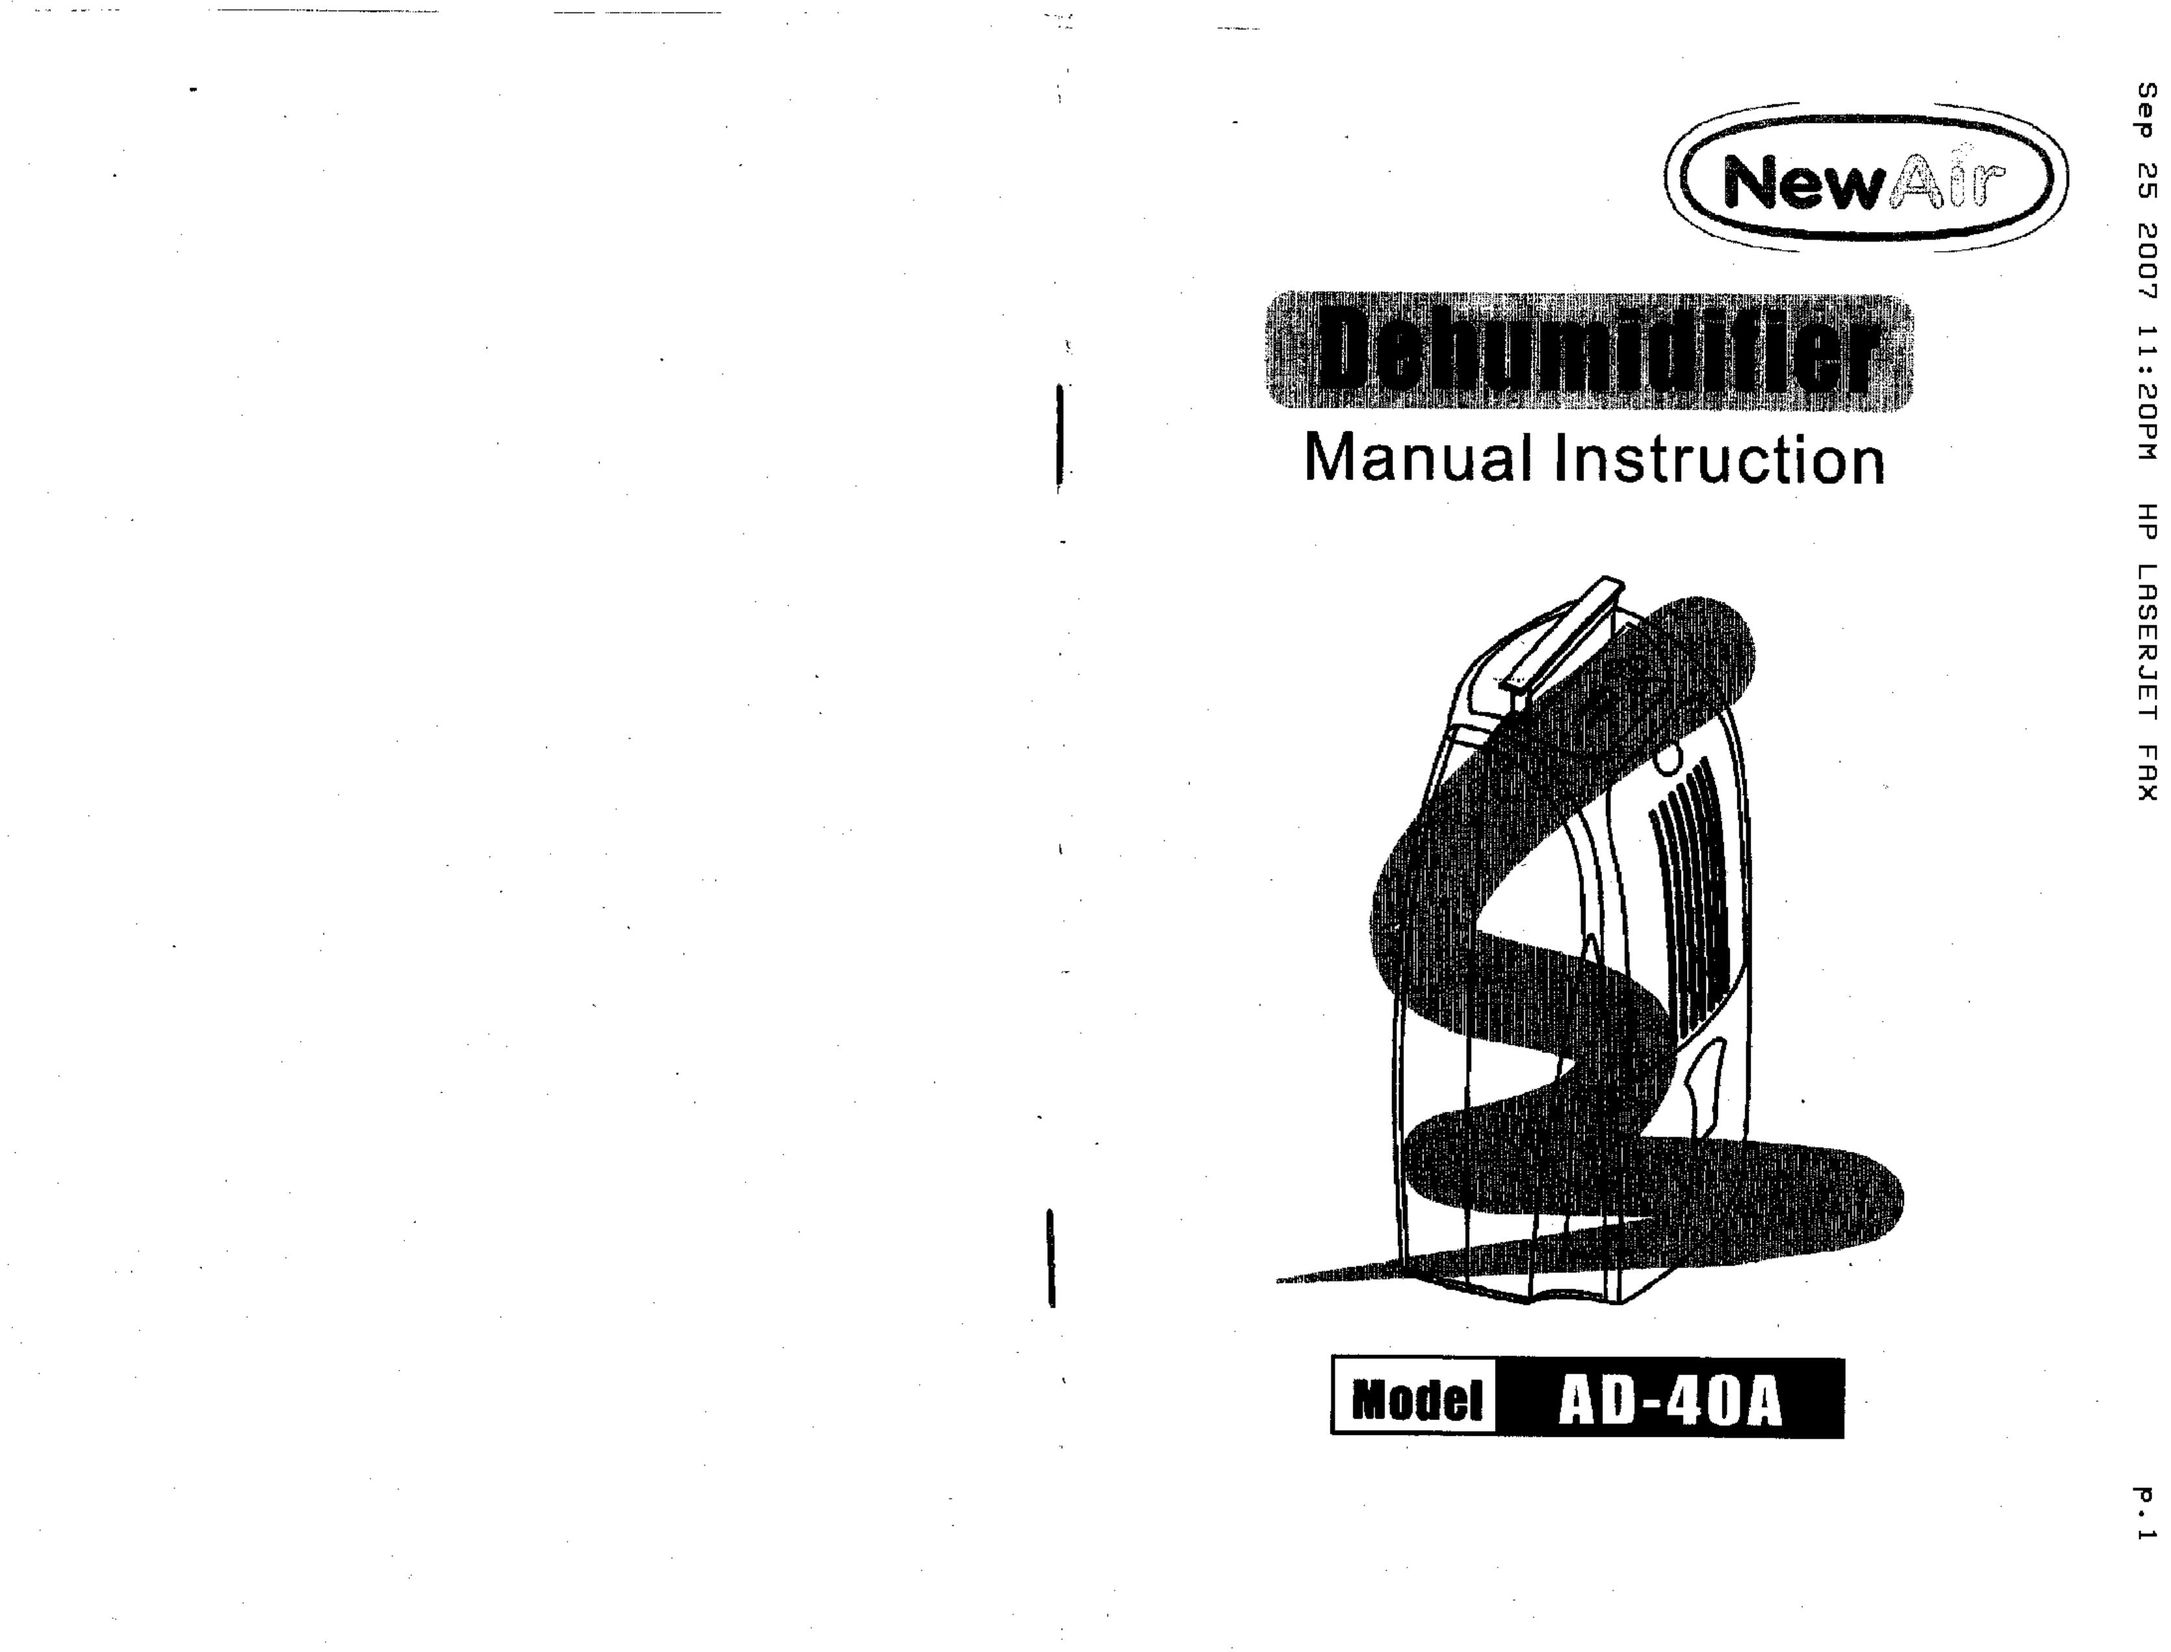 NewAir AD-40A Dehumidifier User Manual